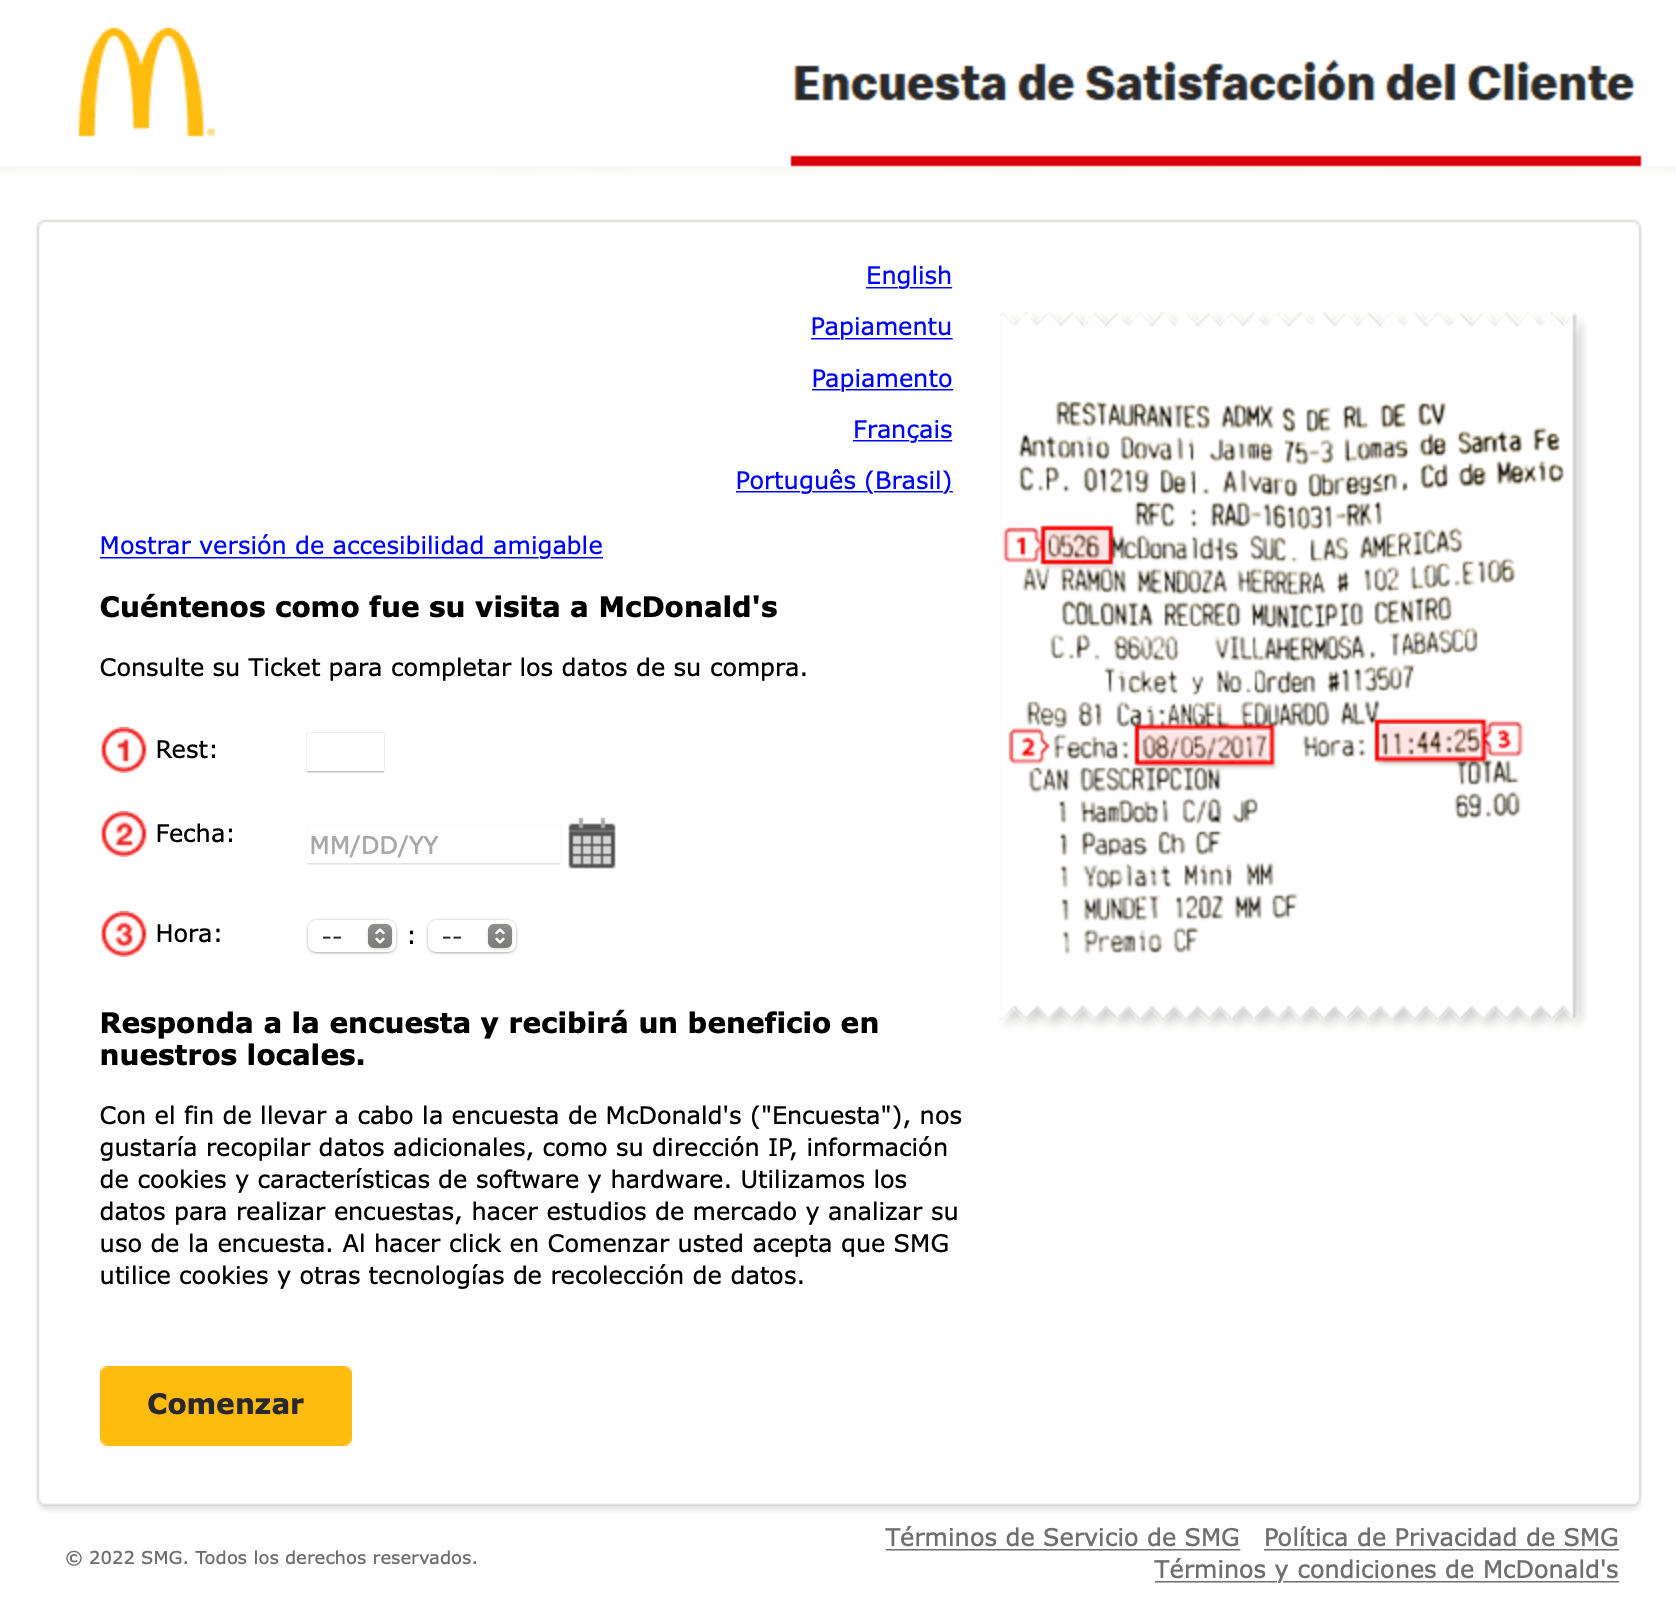 Ejemplo de encuesta de satisfacción al cliente de McDonalds